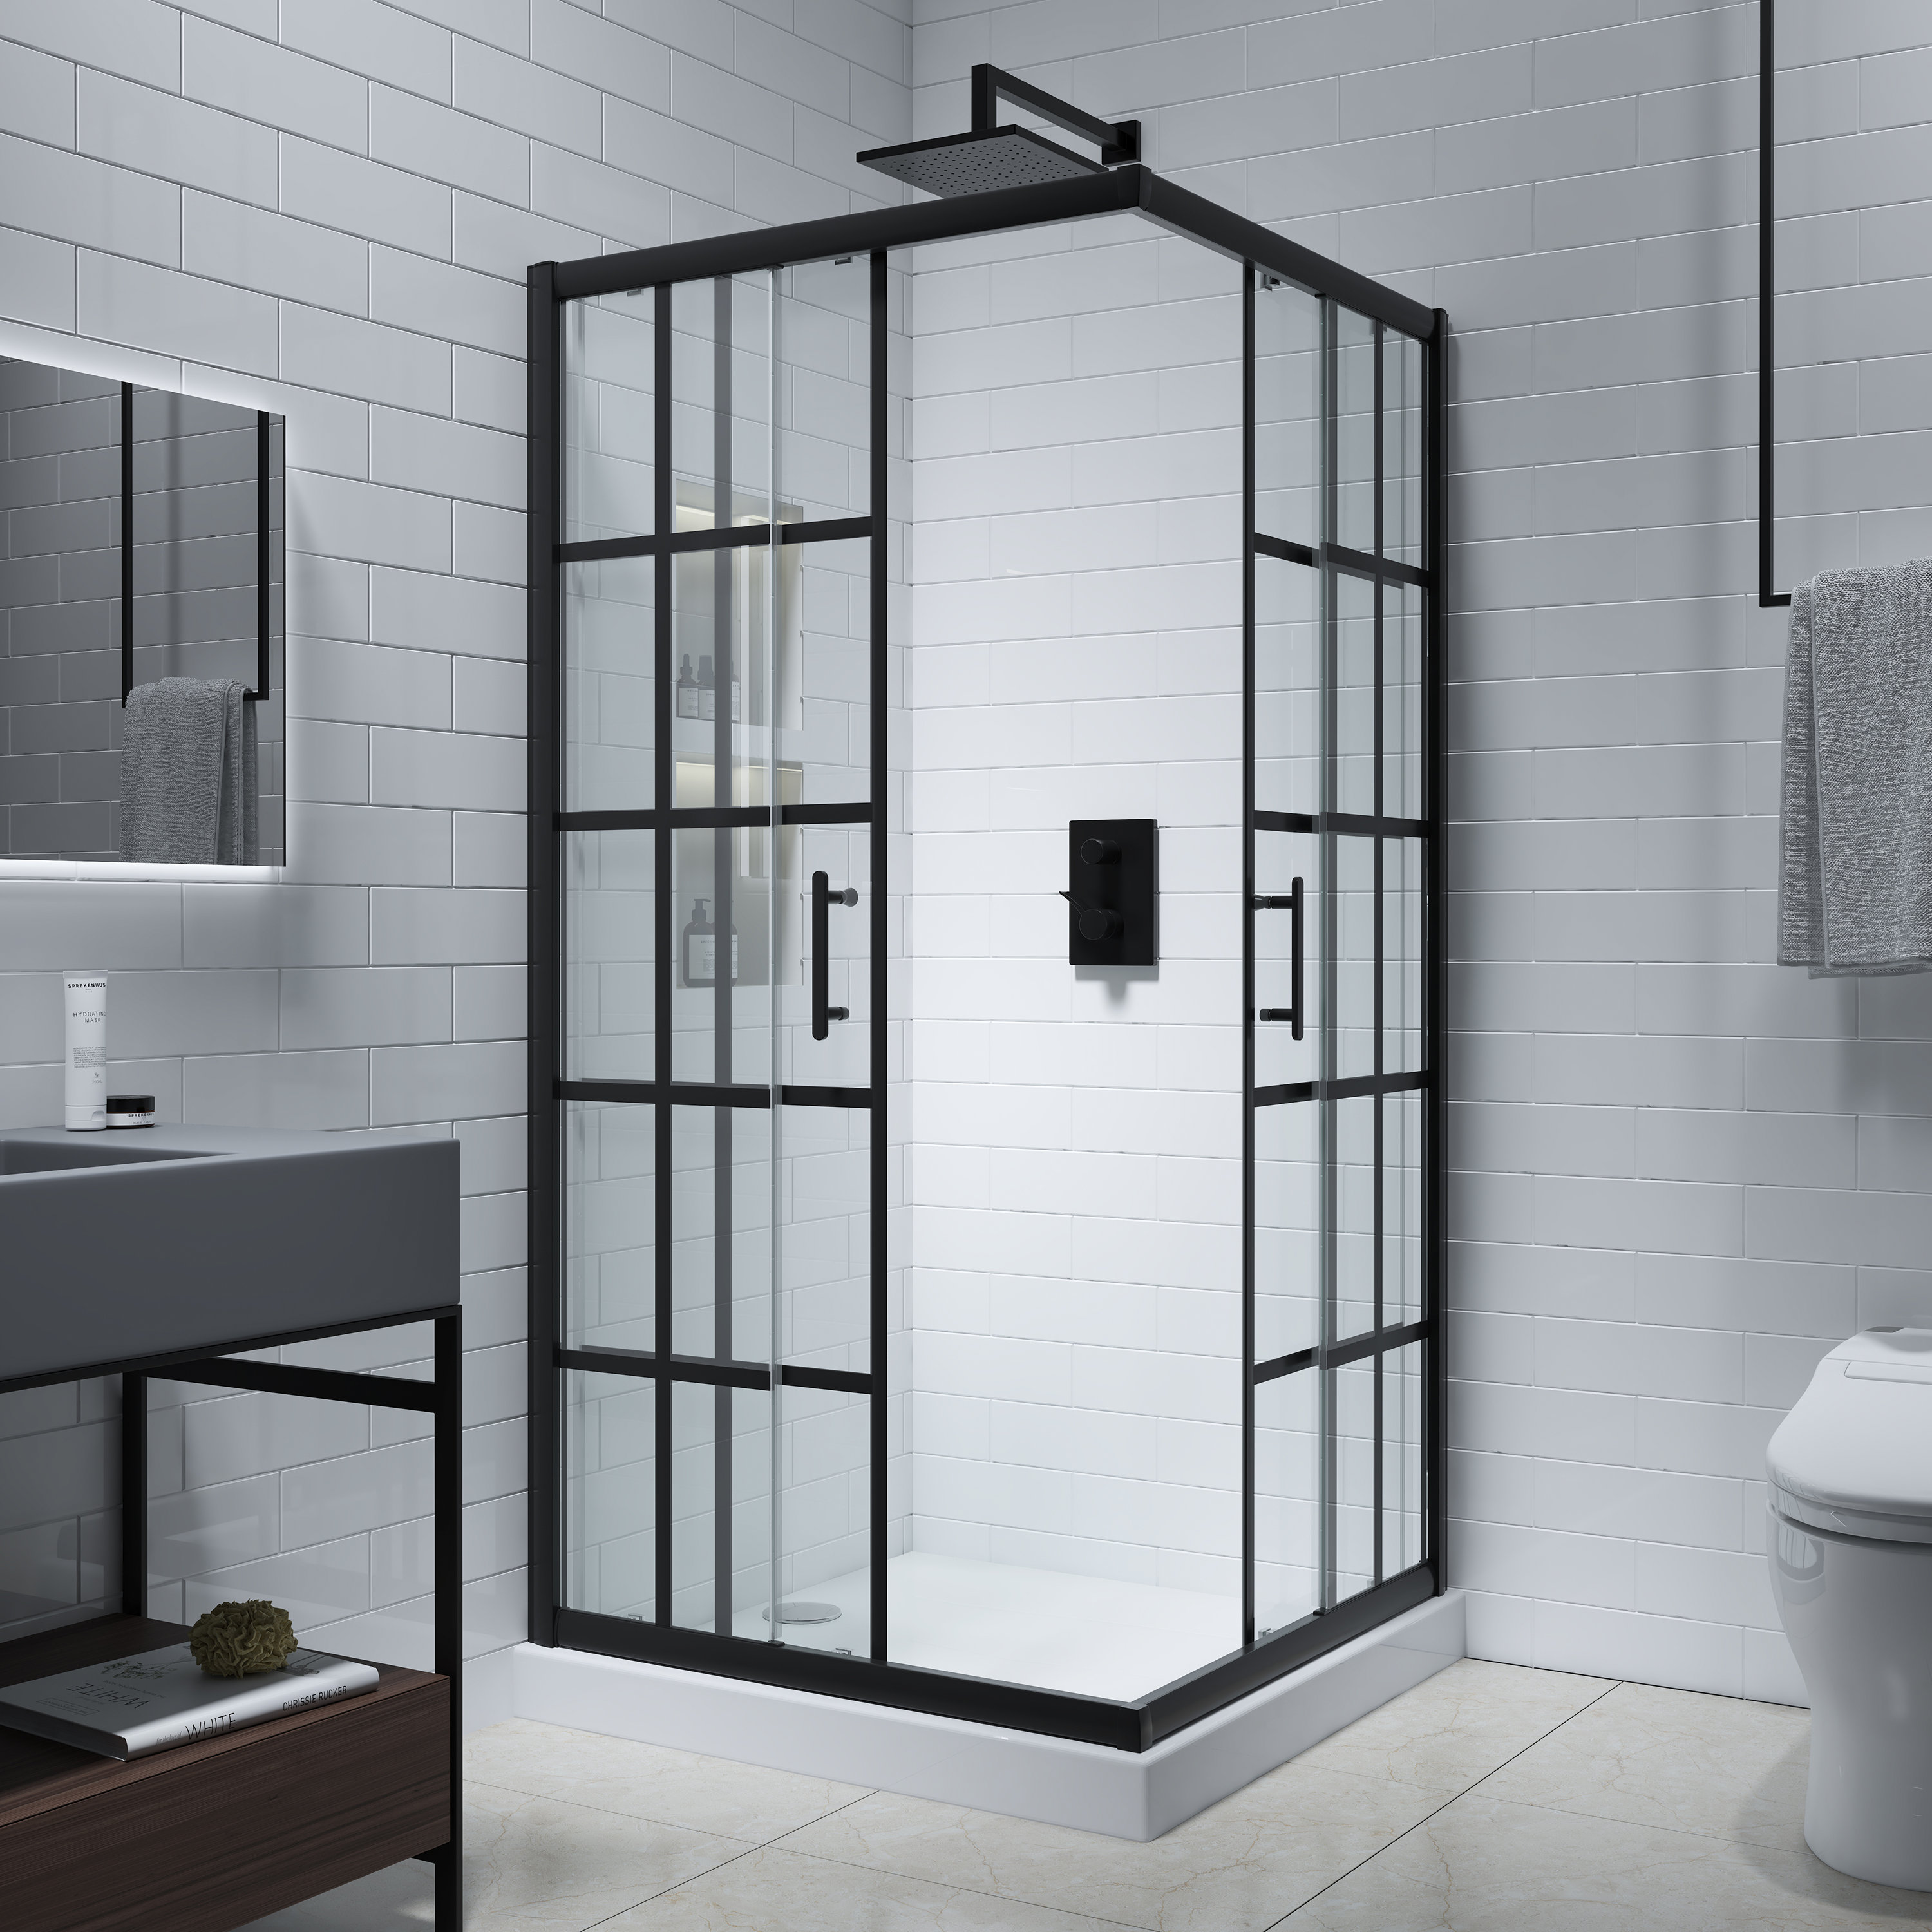 https://assets.wfcdn.com/im/29849294/compr-r85/2021/202107457/cyrus-36-w-72-h-framed-square-reversible-shower-enclosure.jpg